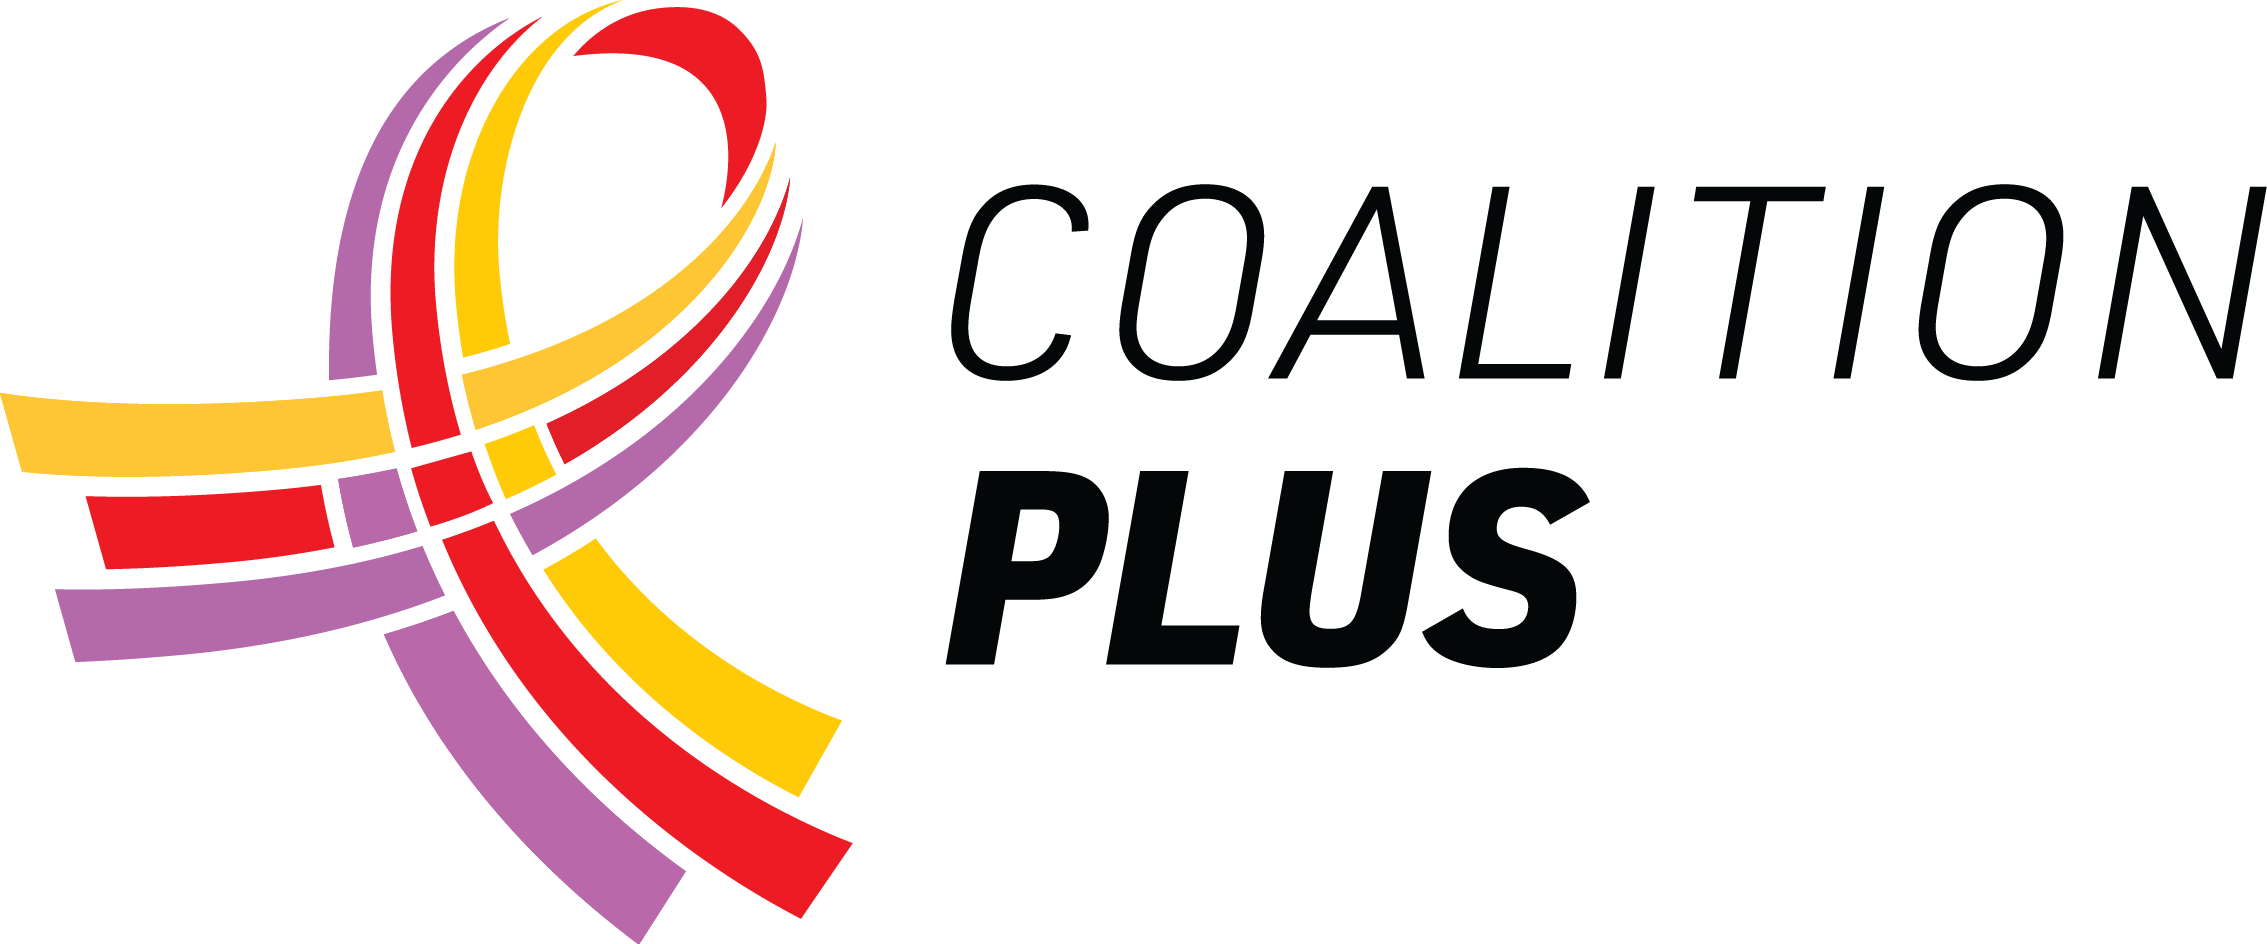 Logo de l'association Coalition PLUS.